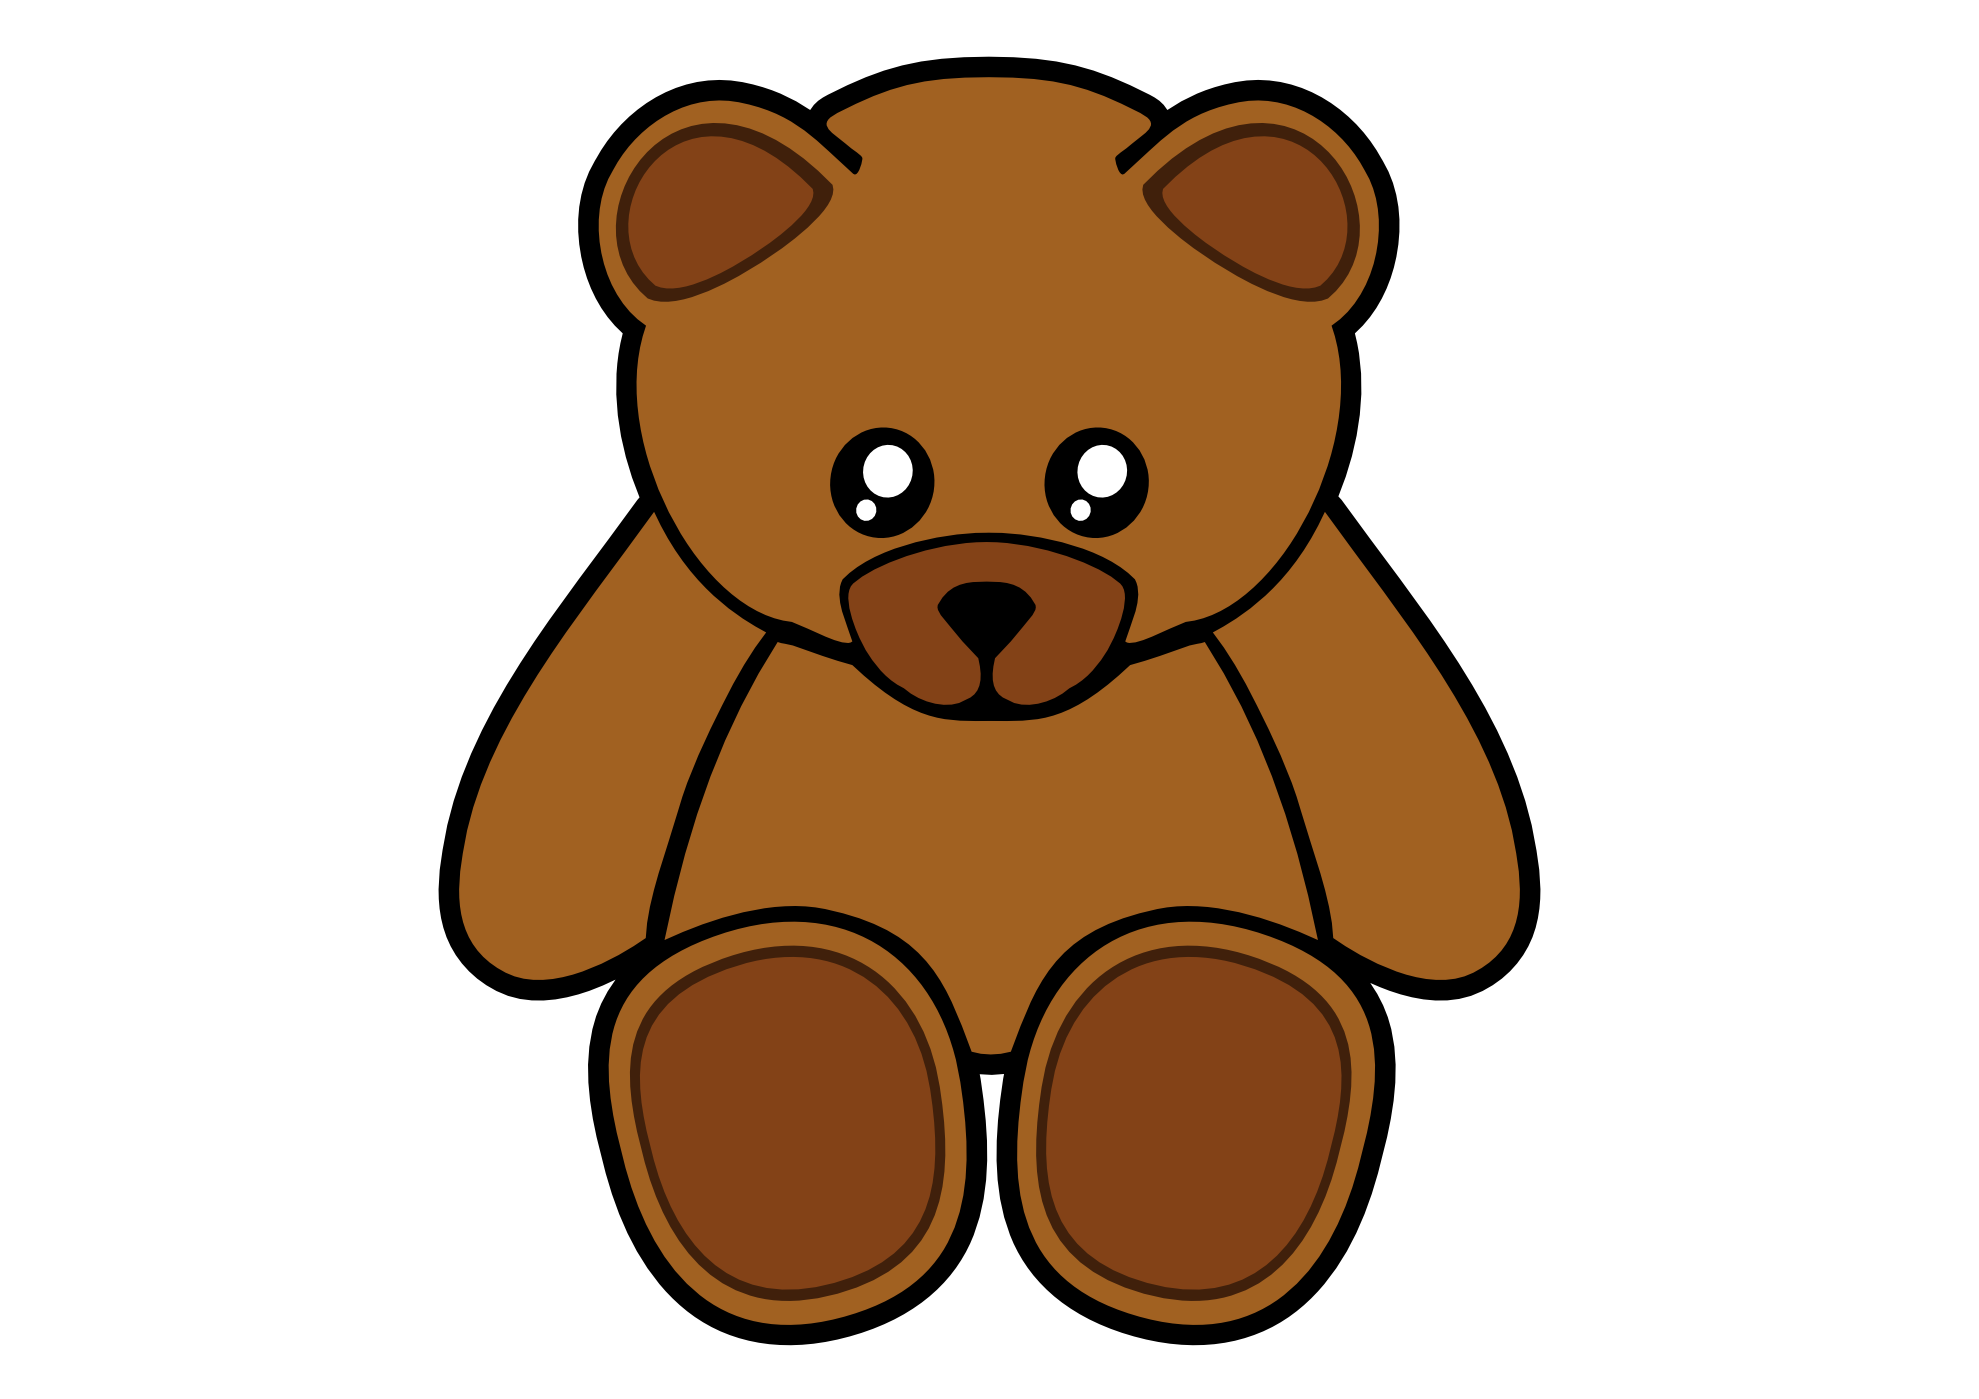 grubby teddy bear clipart